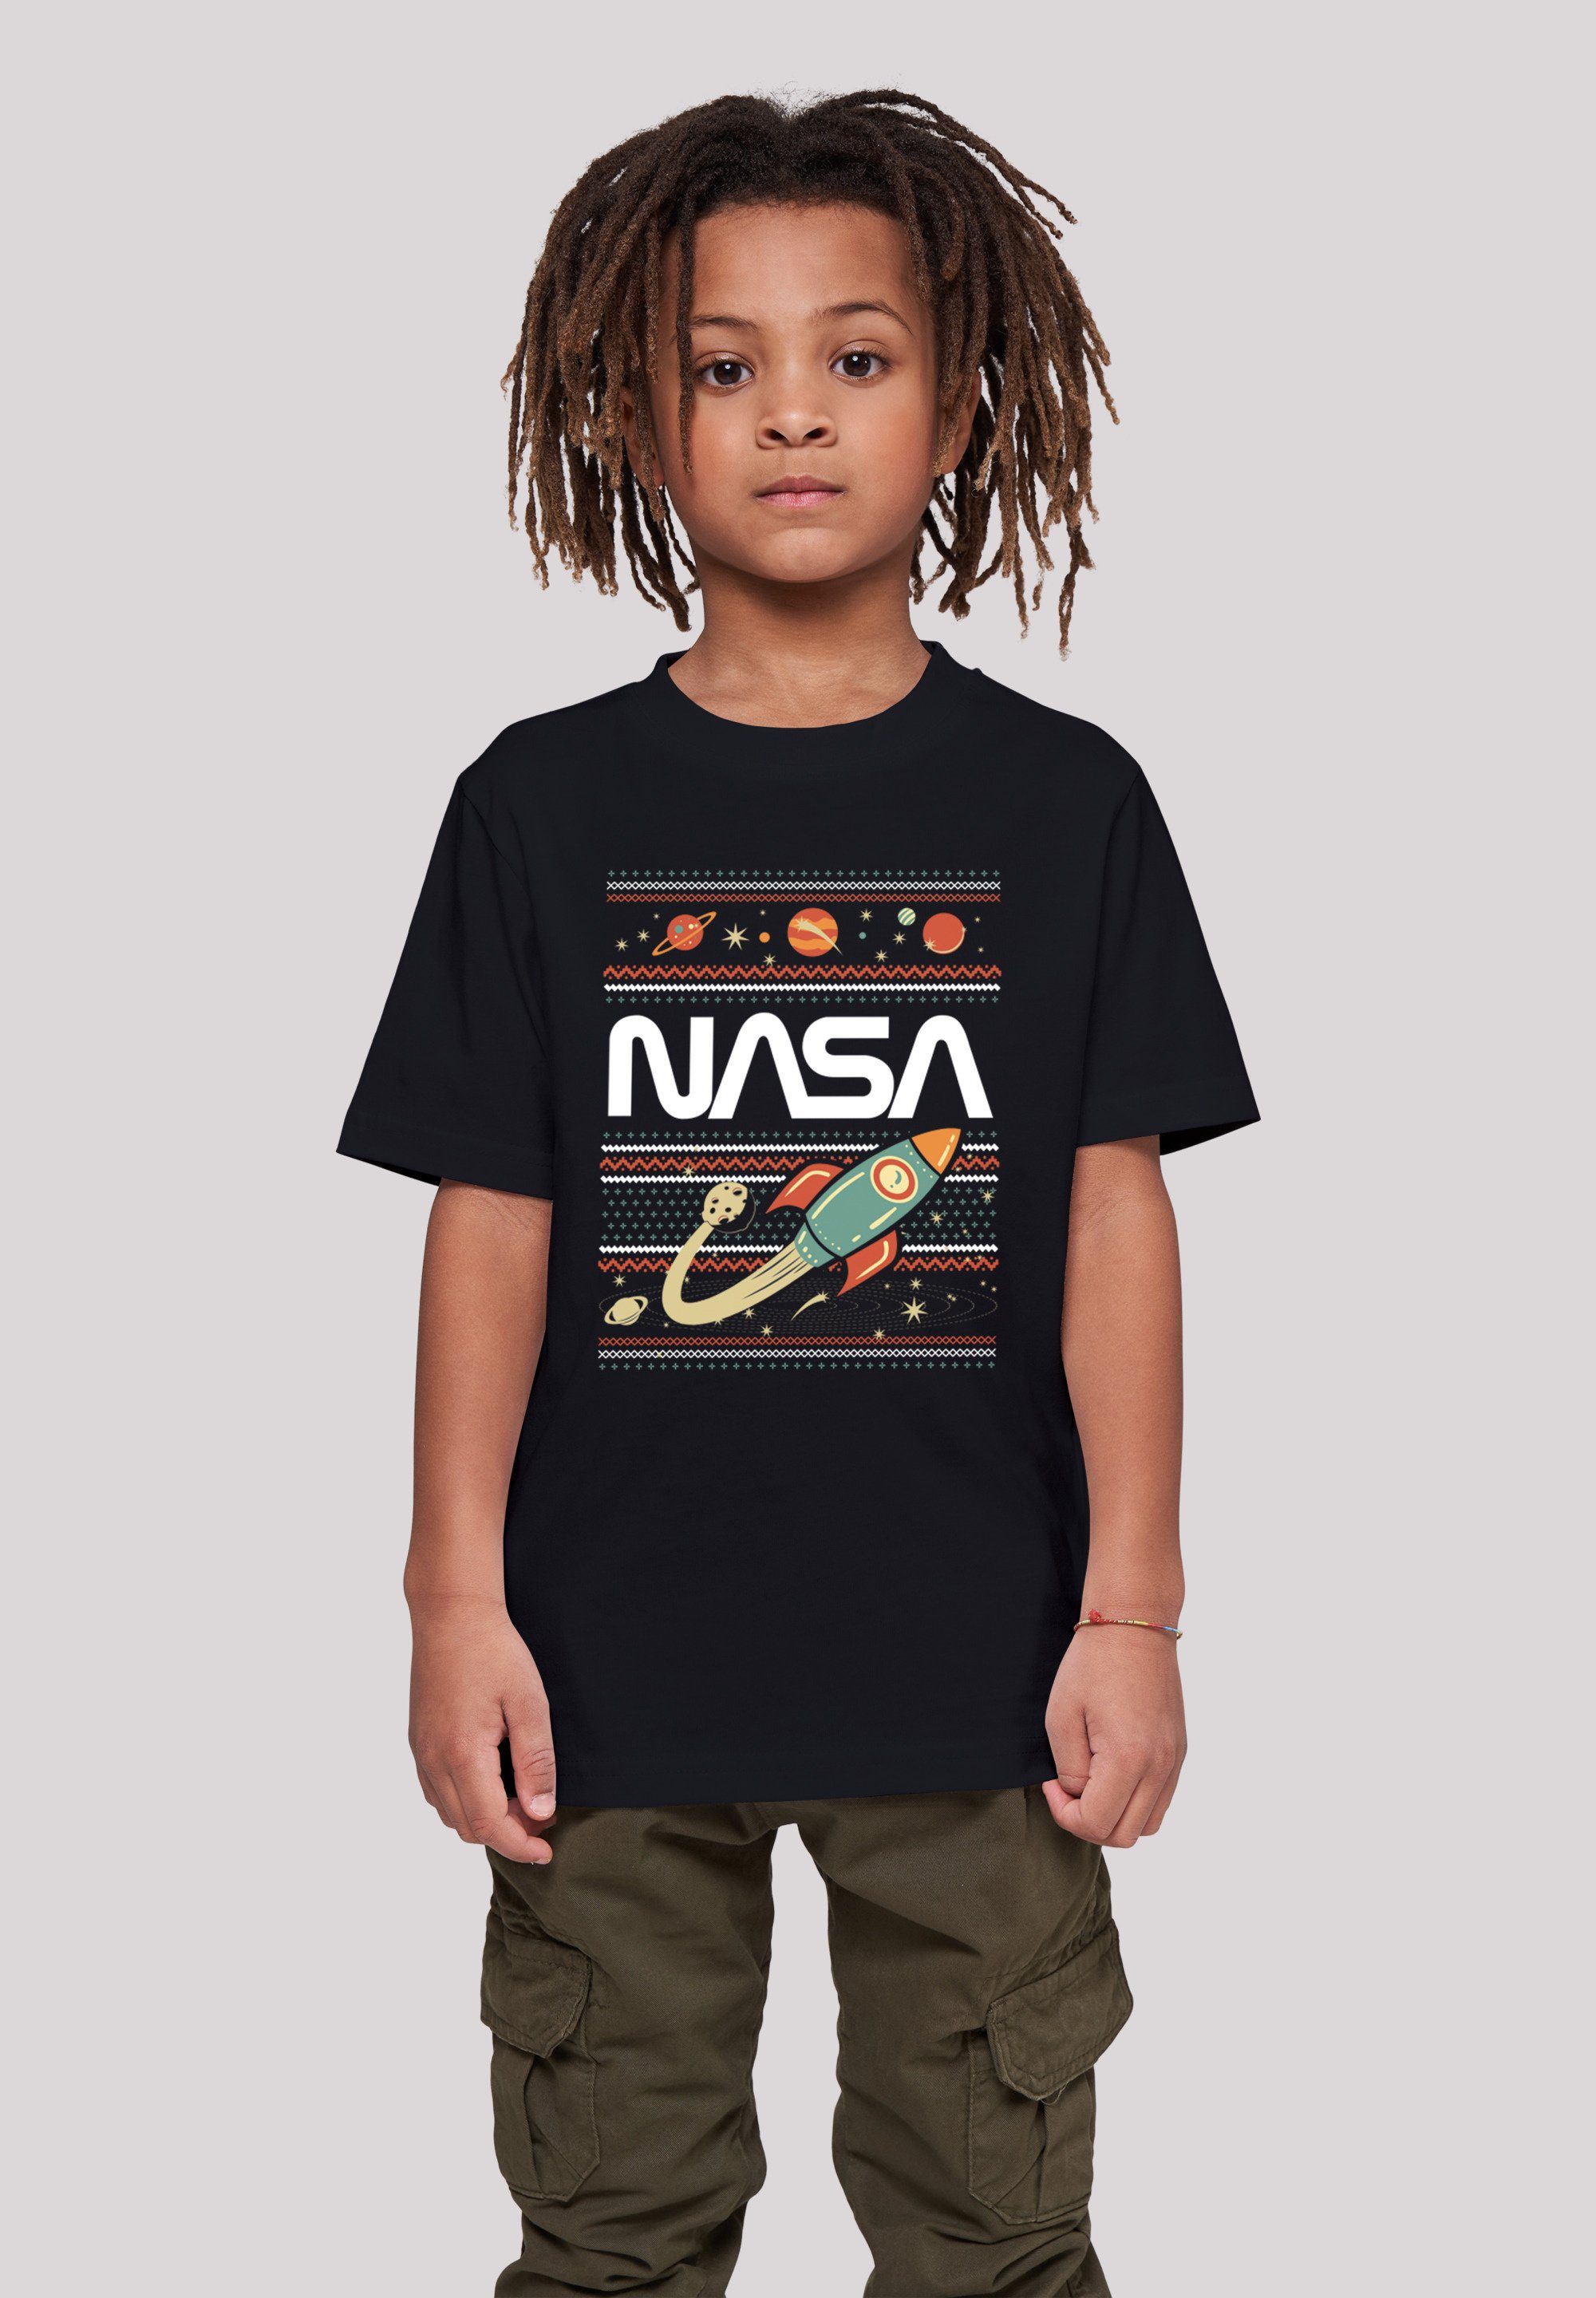 Kinder,Premium Fair Unisex NASA T-Shirt F4NT4STIC Merch,Jungen,Mädchen,Bedruckt Isle